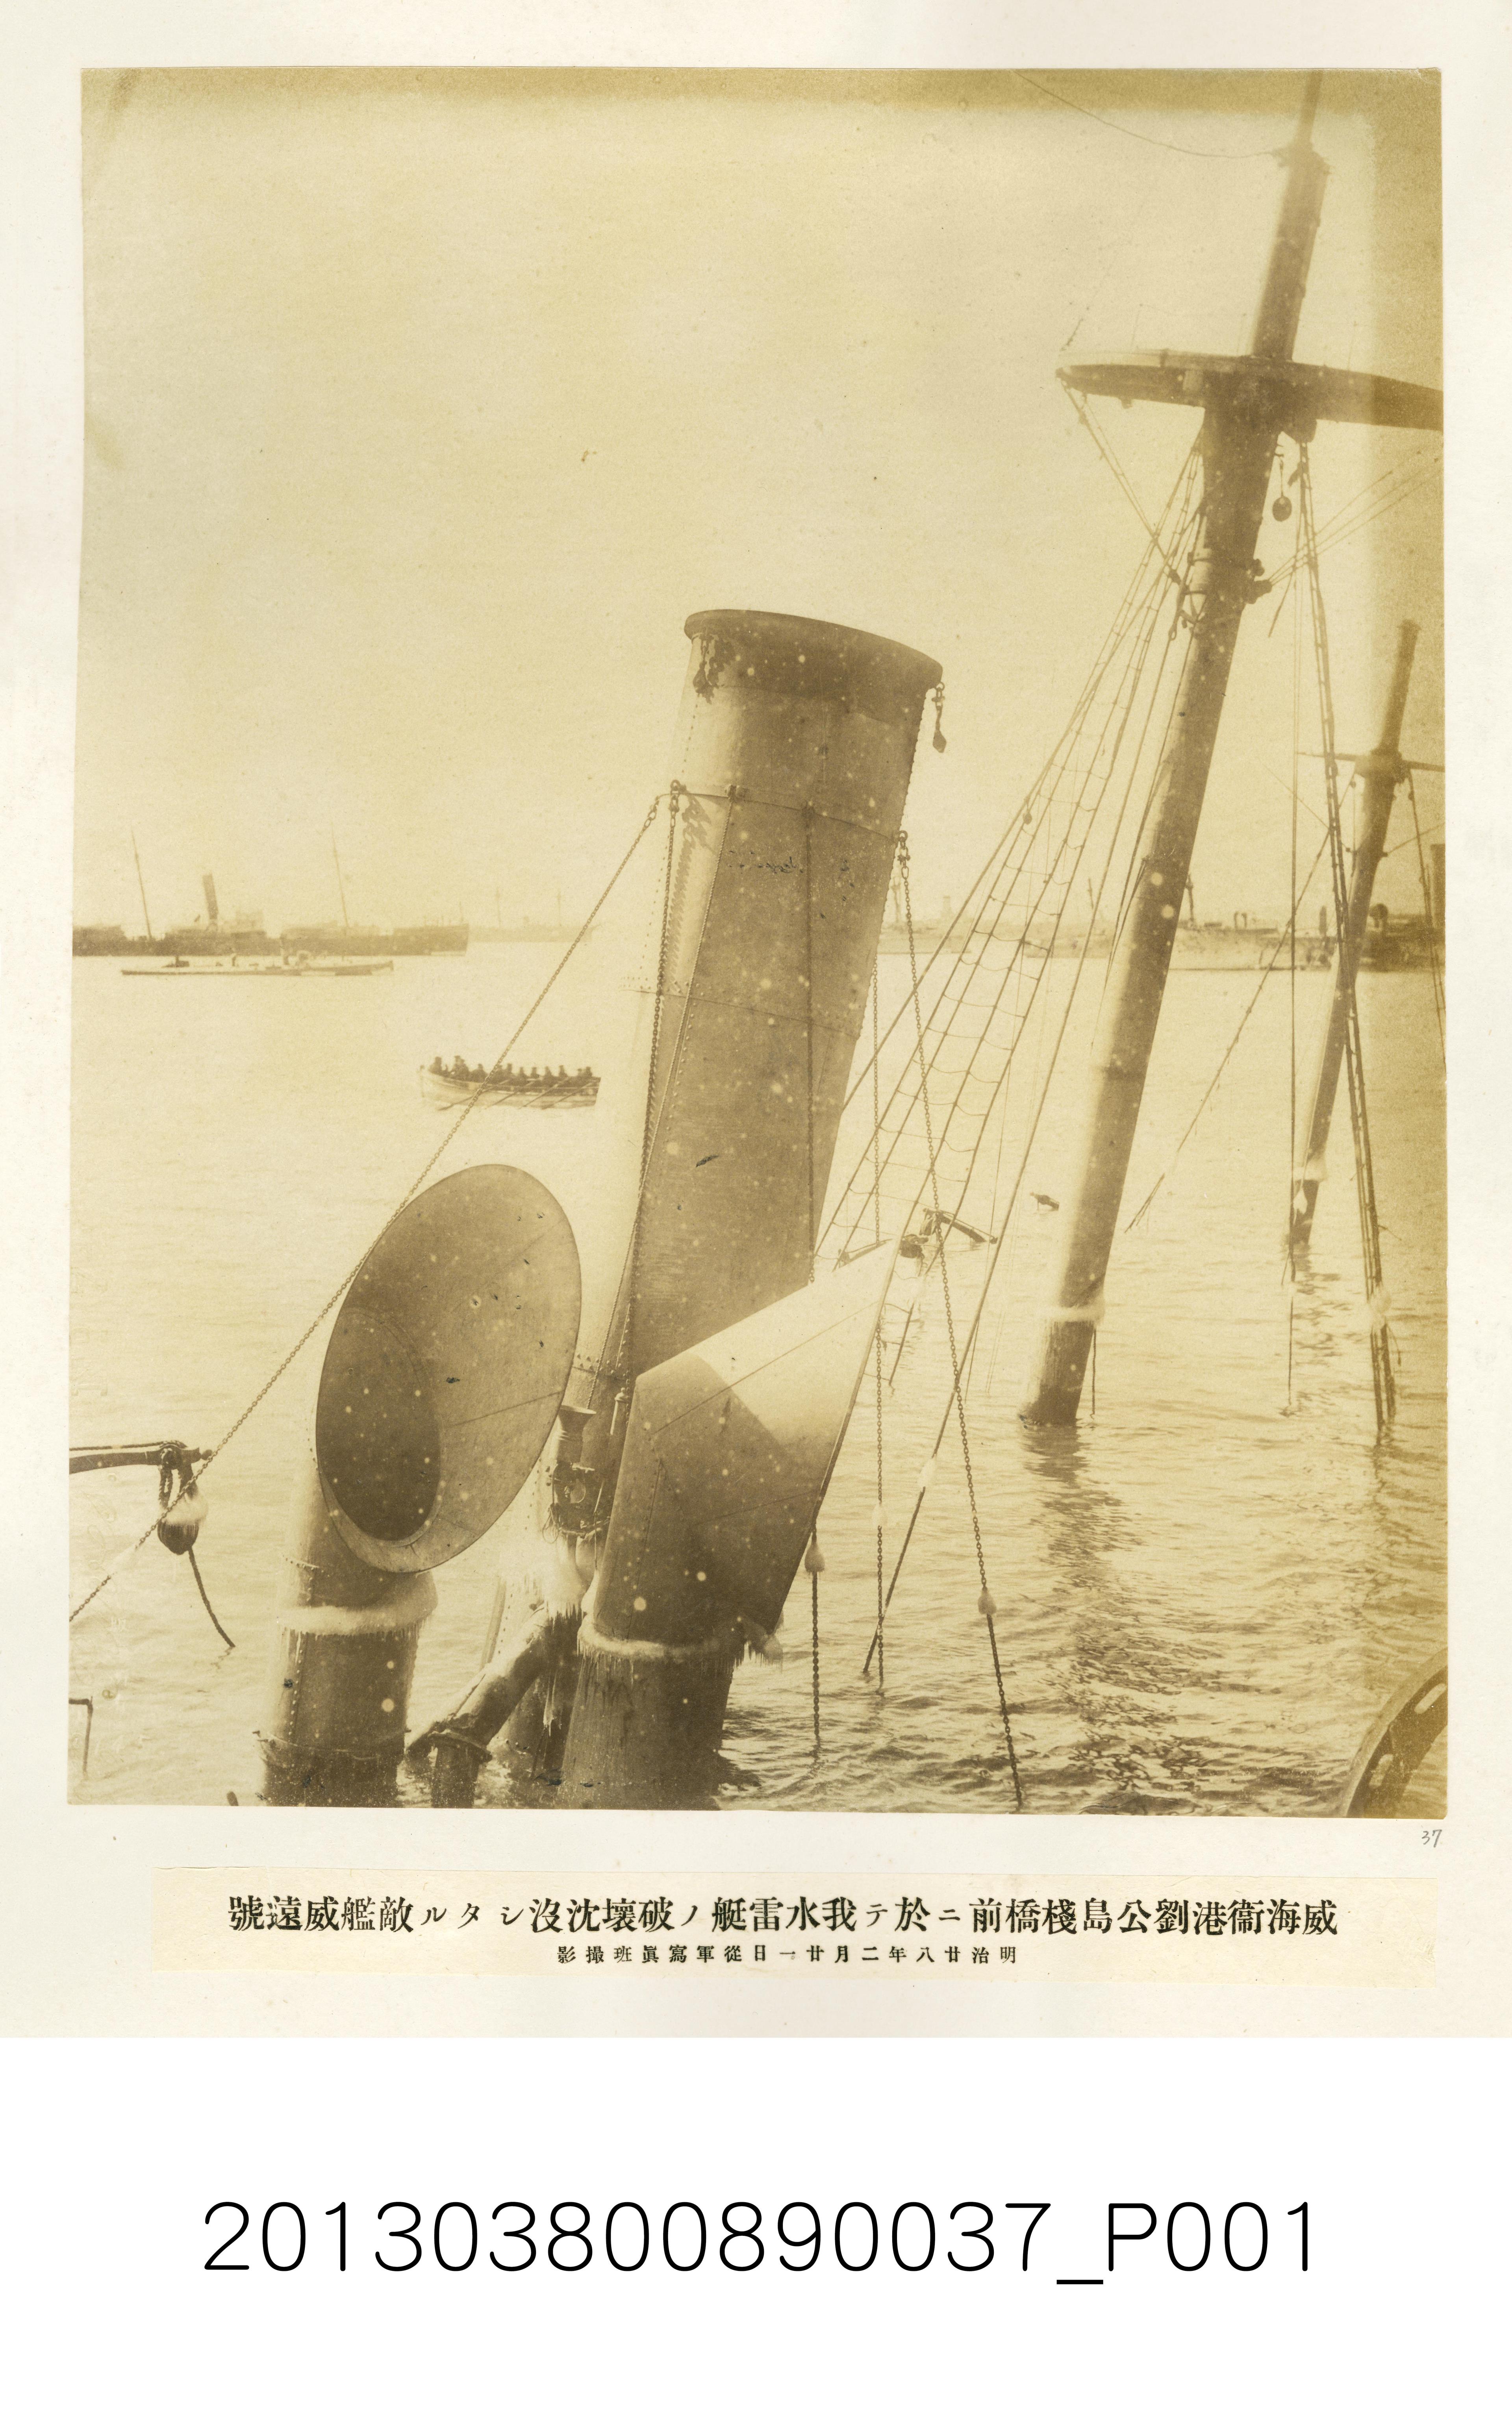 我水雷艇於威海衛劉公島棧橋擊沉的敵艦威遠號 (共1張)